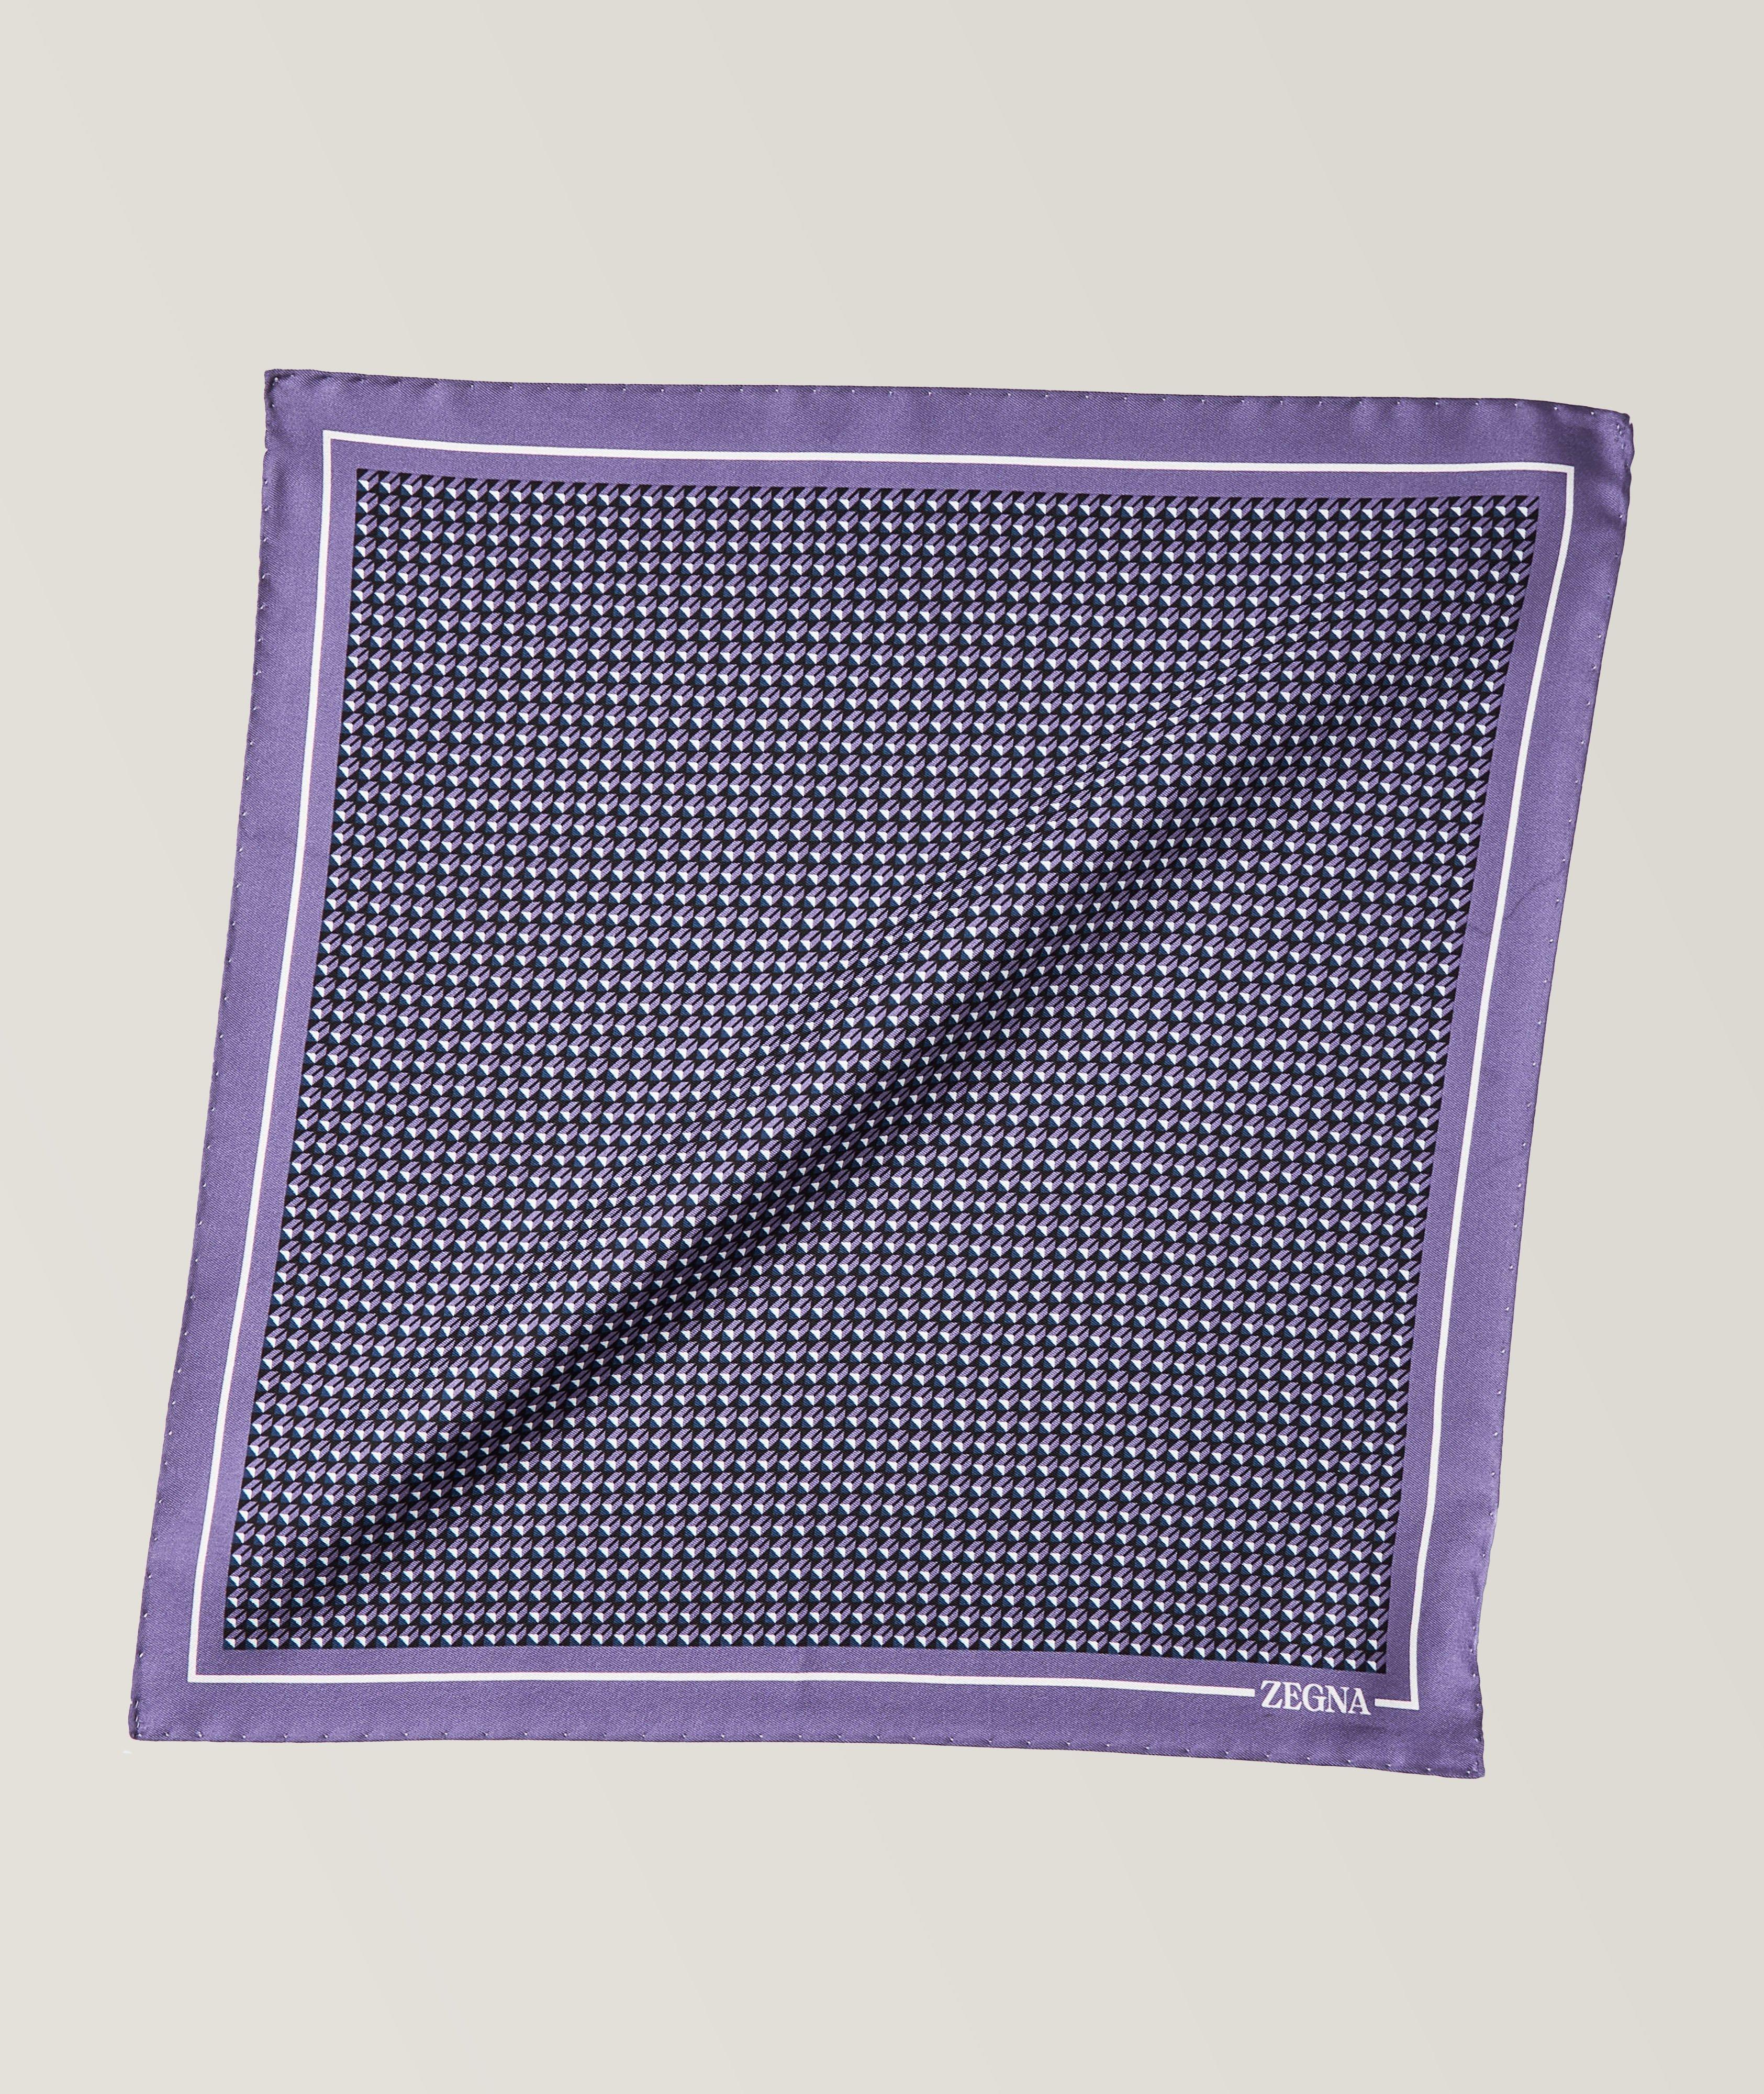 Mouchoir de poche en soie à motif géométrique image 0